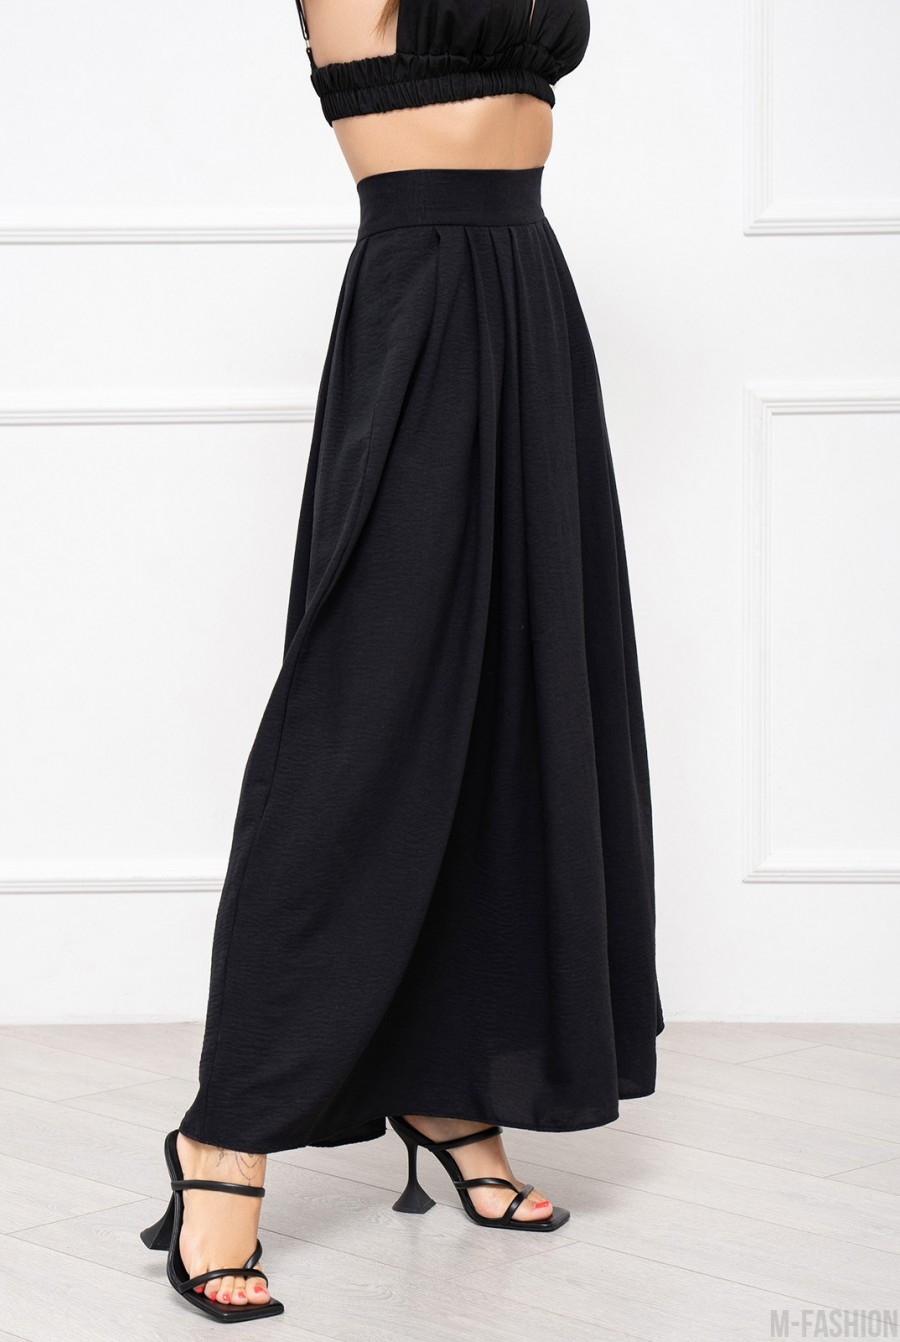 Черная текстурированная юбка со сборками - Фото 2